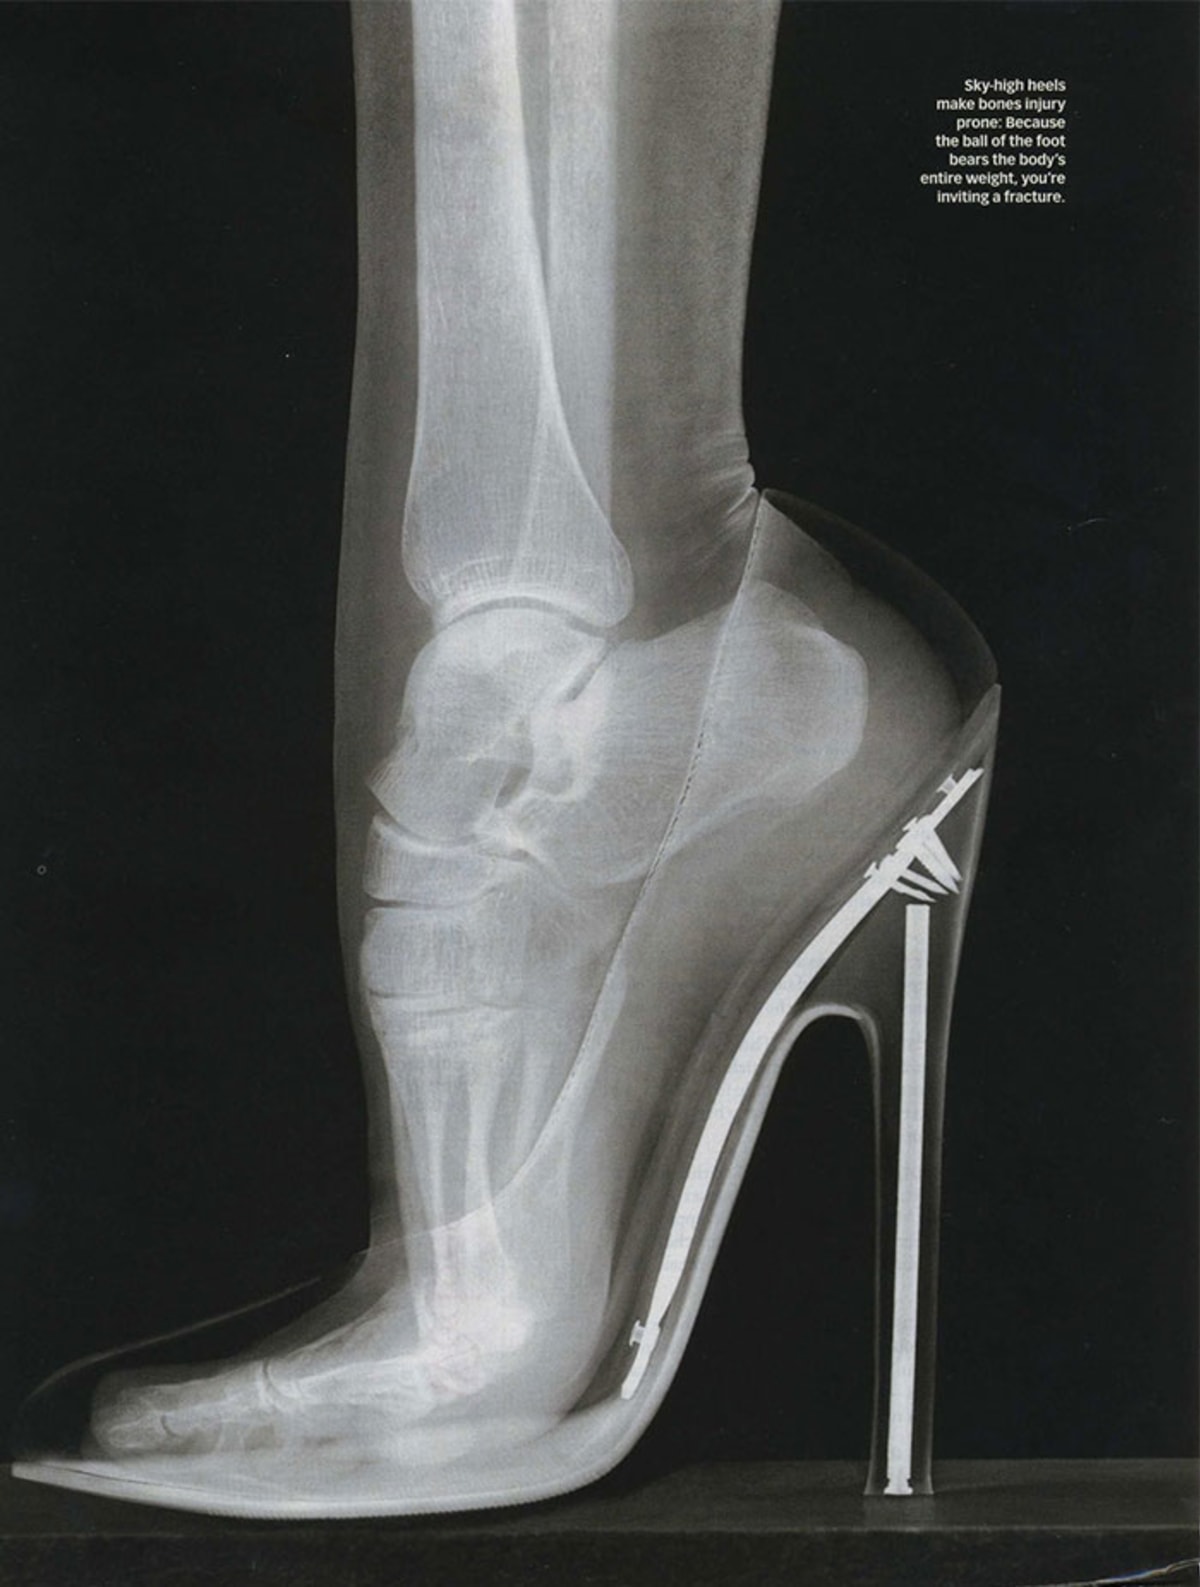 I v porovnání se snímkem baletčiny nohy se klasické boty na podpatku zdají jako mučicí nástroj ze středověku